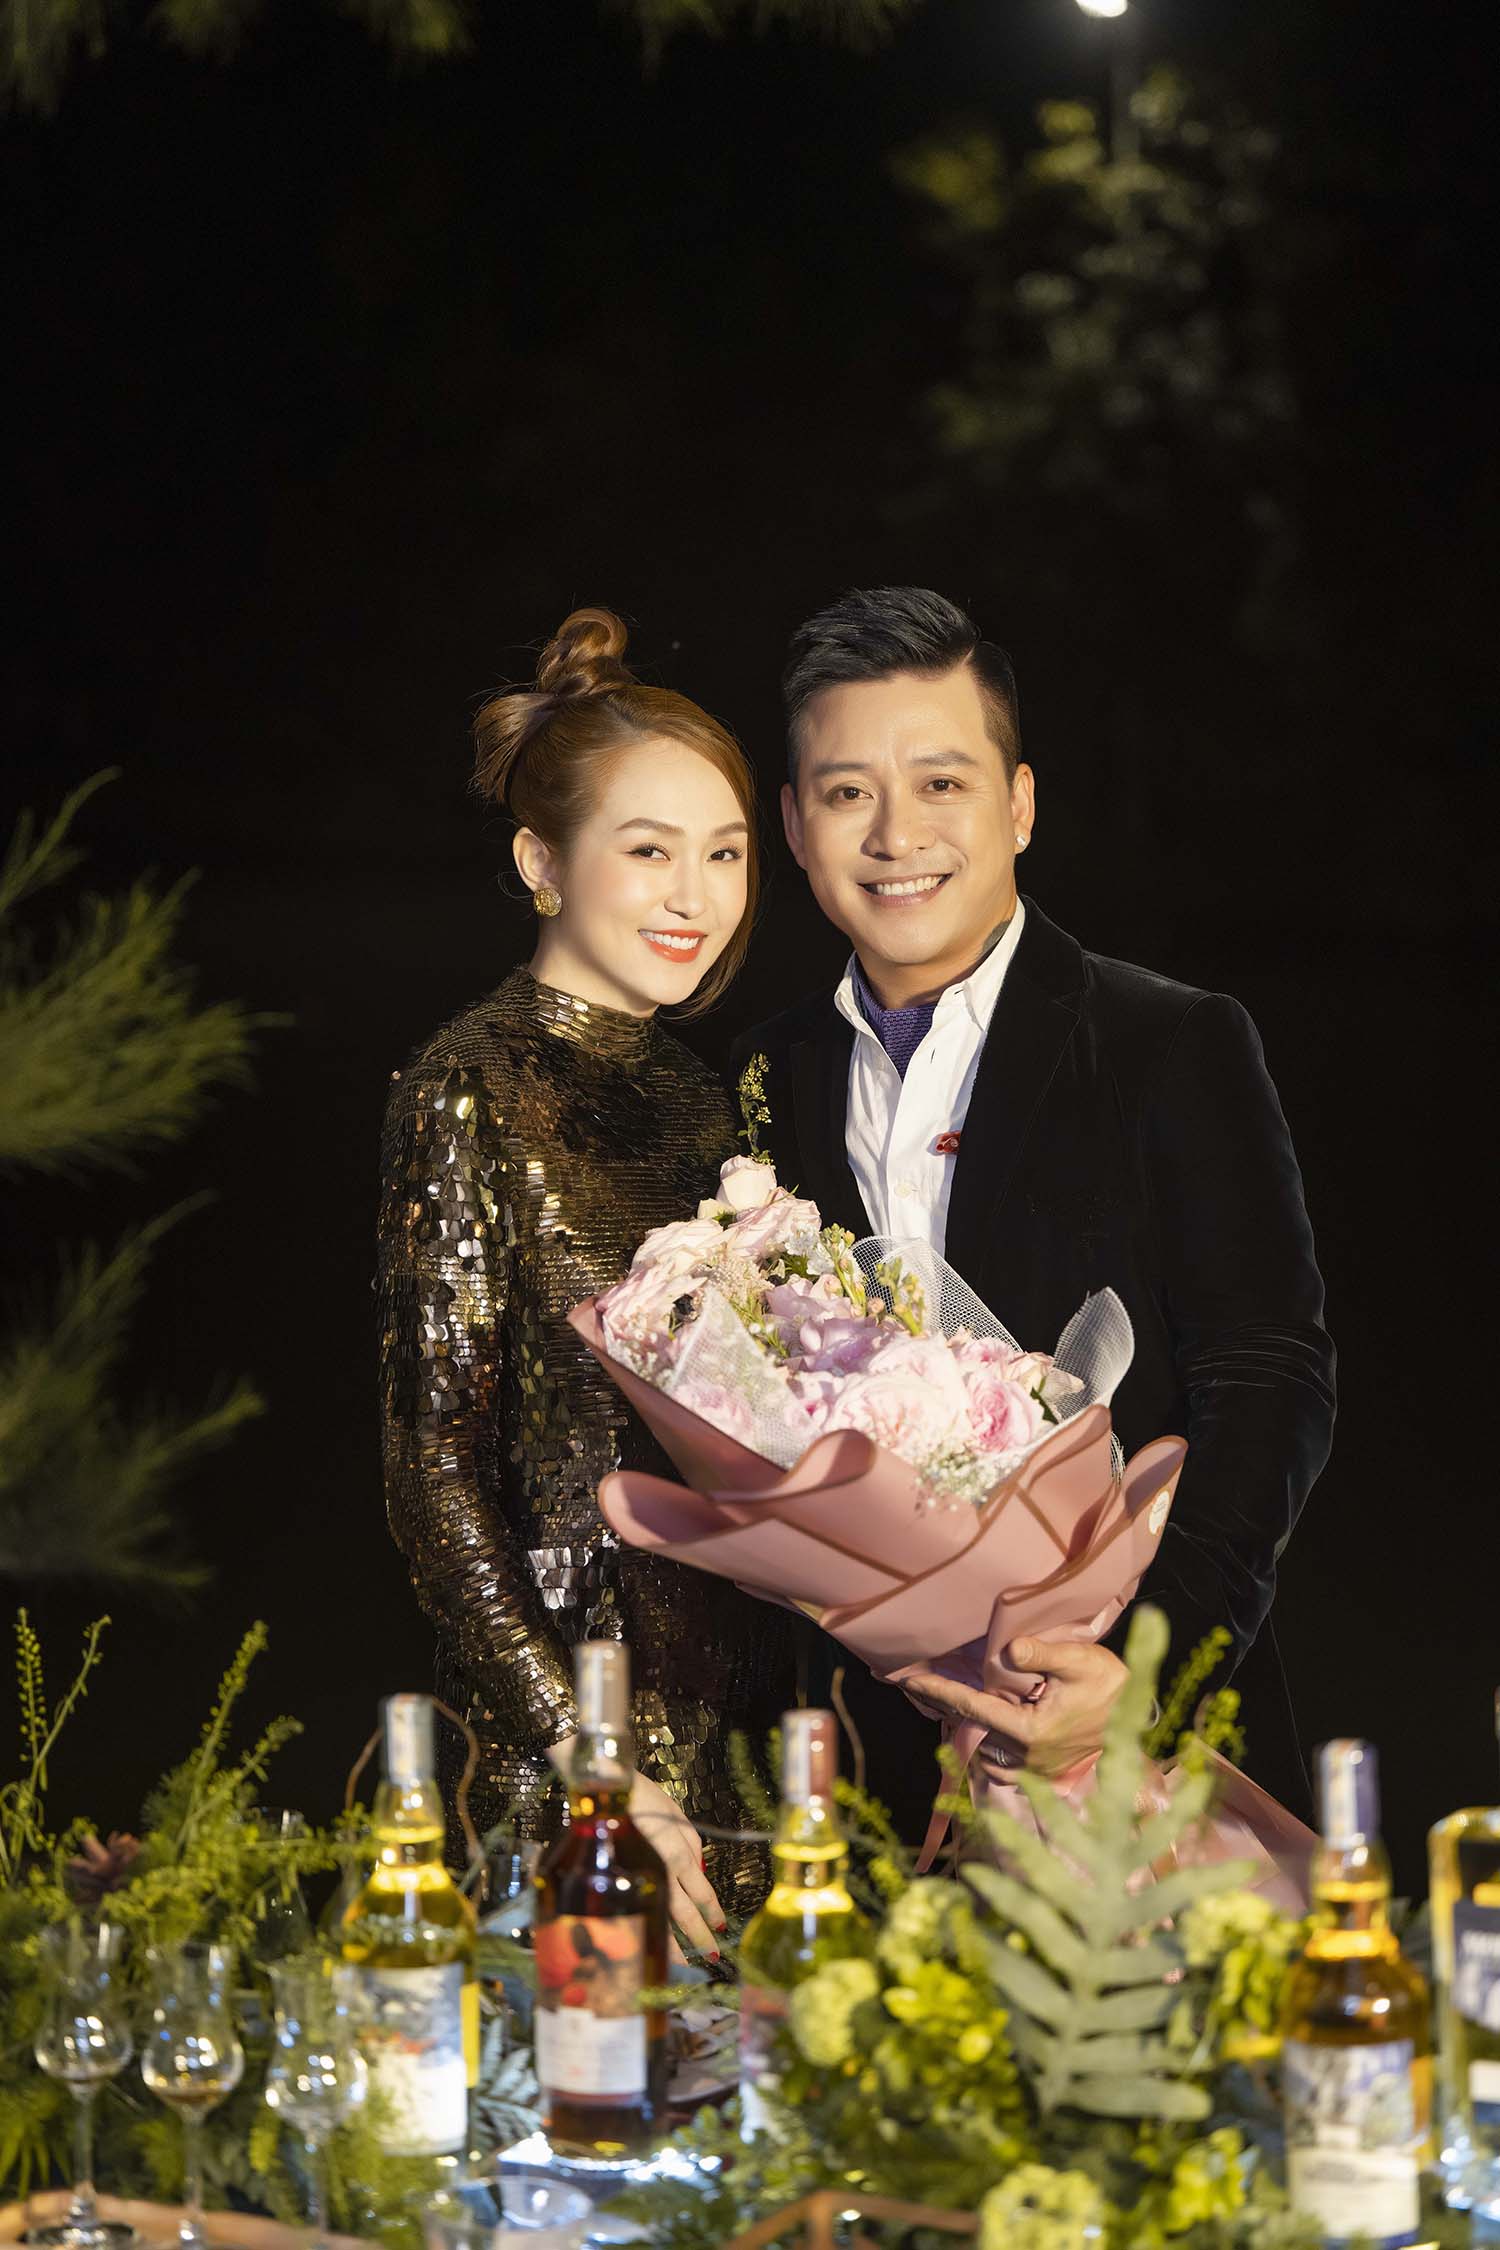 Tuấn Hưng tổ chức đêm nhạc dành cho vợ trong biệt thự 5 triệu đô